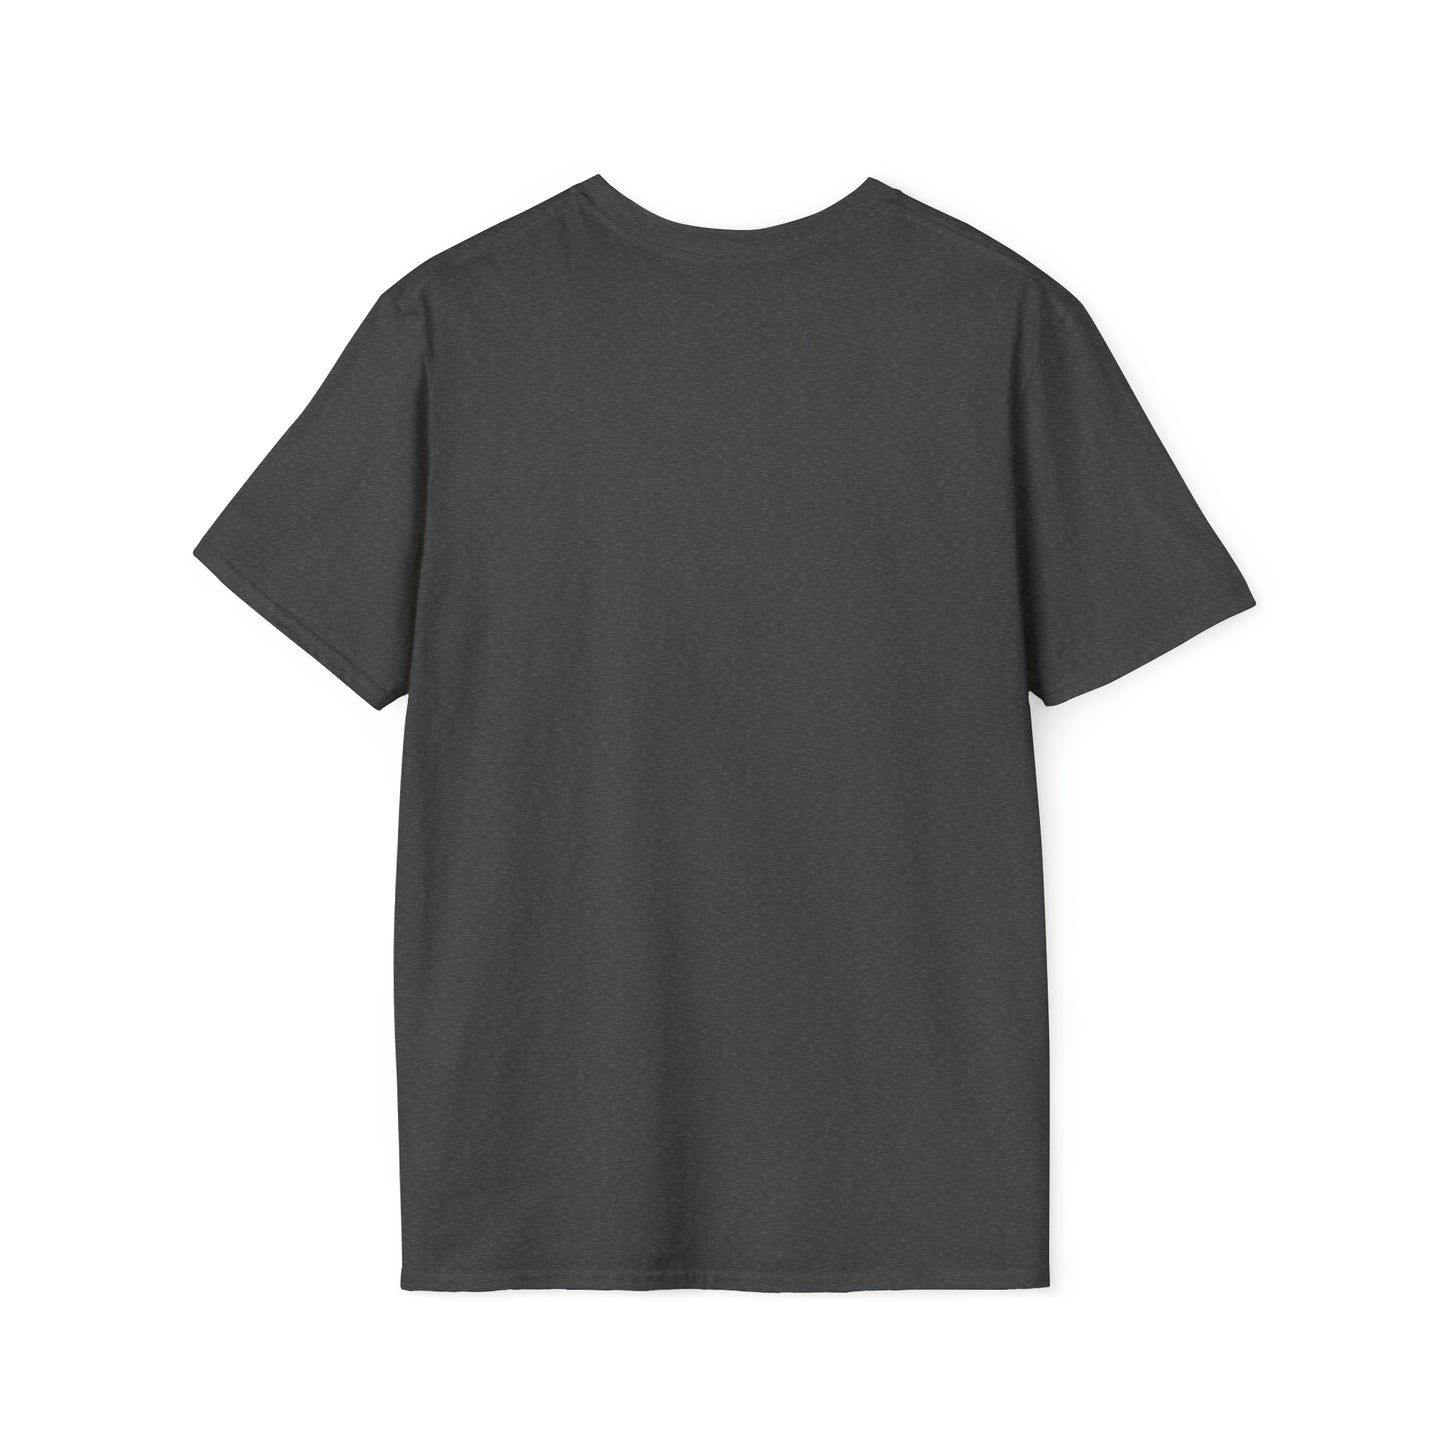 The Goat v2 Unisex Softstyle T-Shirt